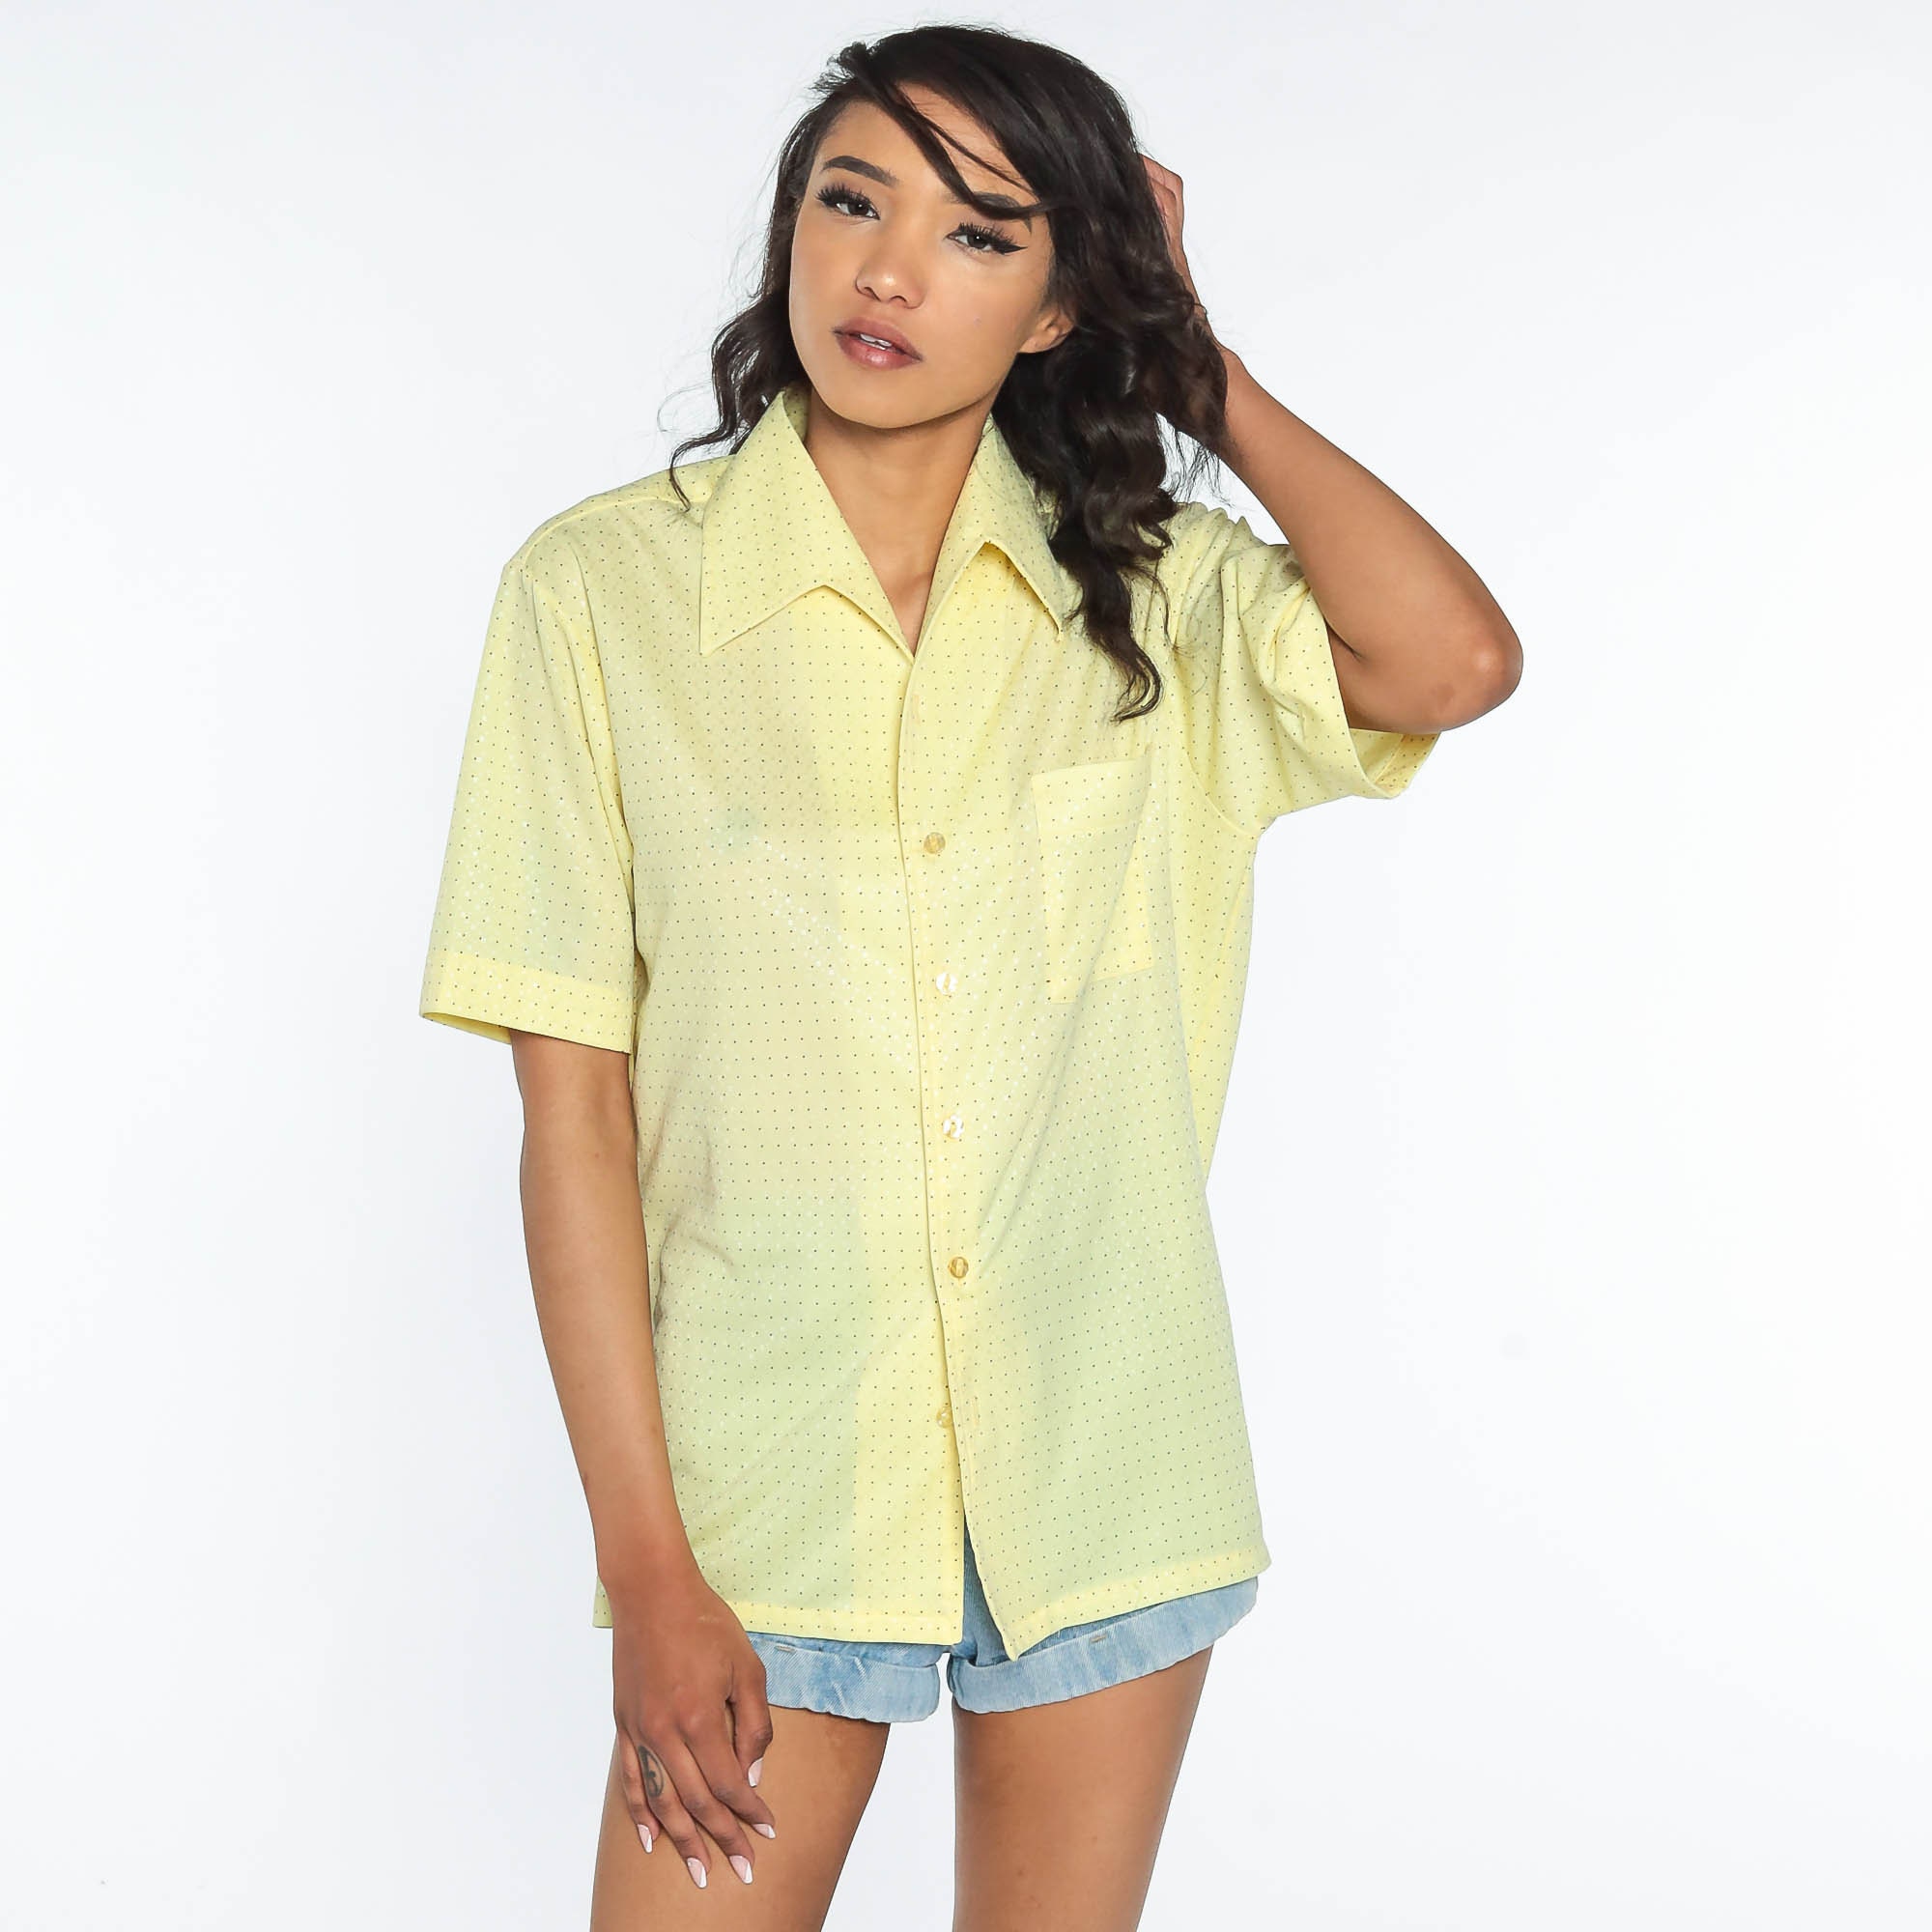 Polka Dot Shirt 70s Top Button Up Shirt Yellow Shirt Boho Disco 1970s ...